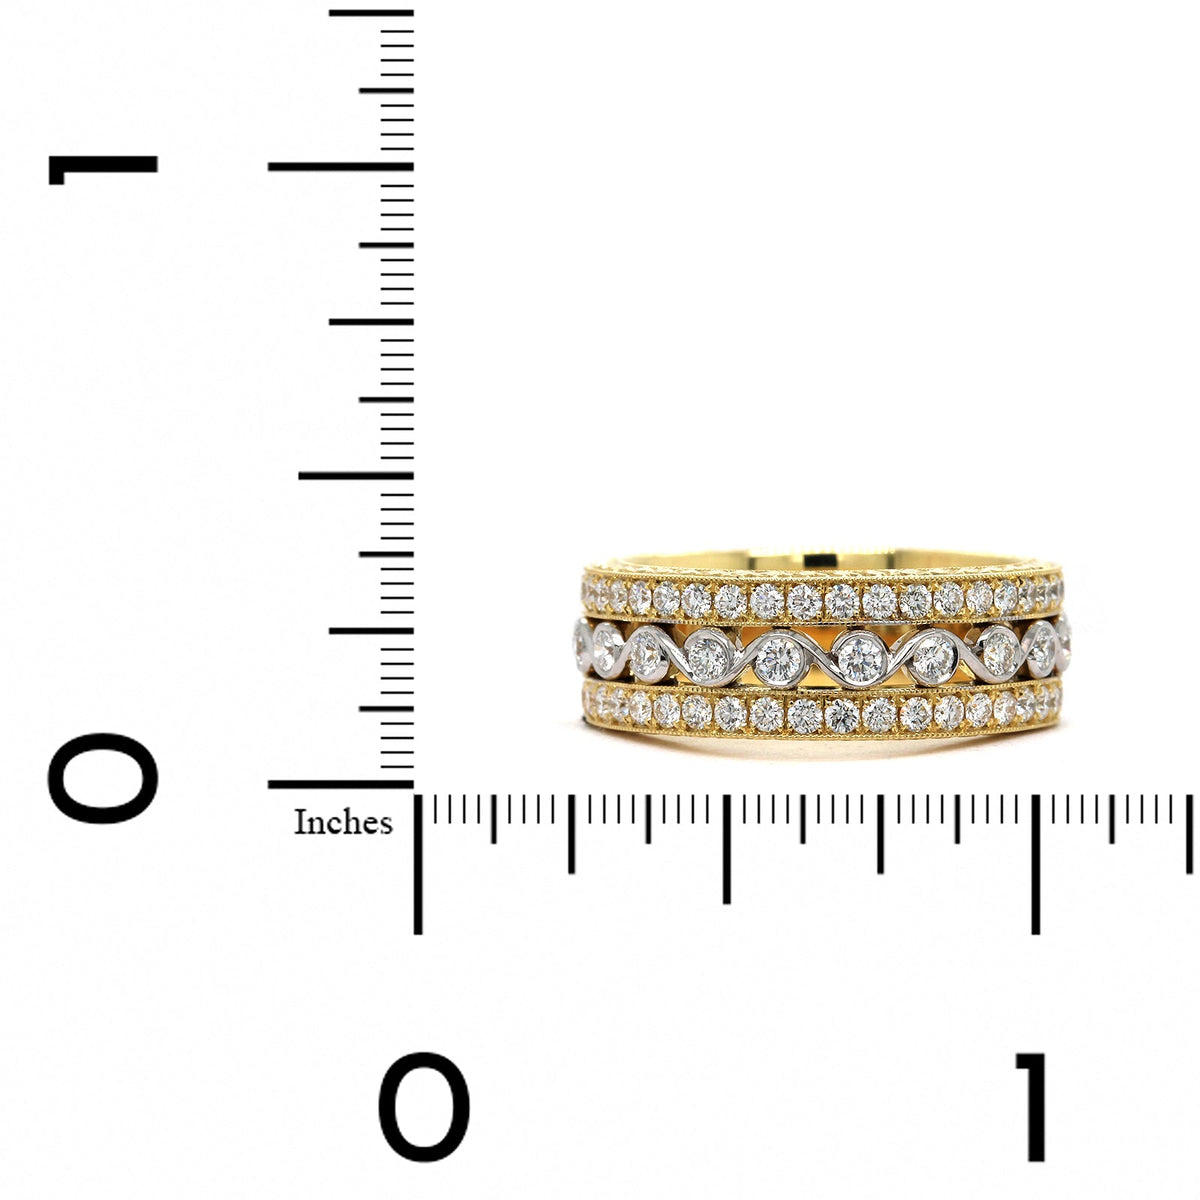 18K Two-Tone Diamond Semi Bezel Band, 18k yellow and white gold, Long's Jewelers